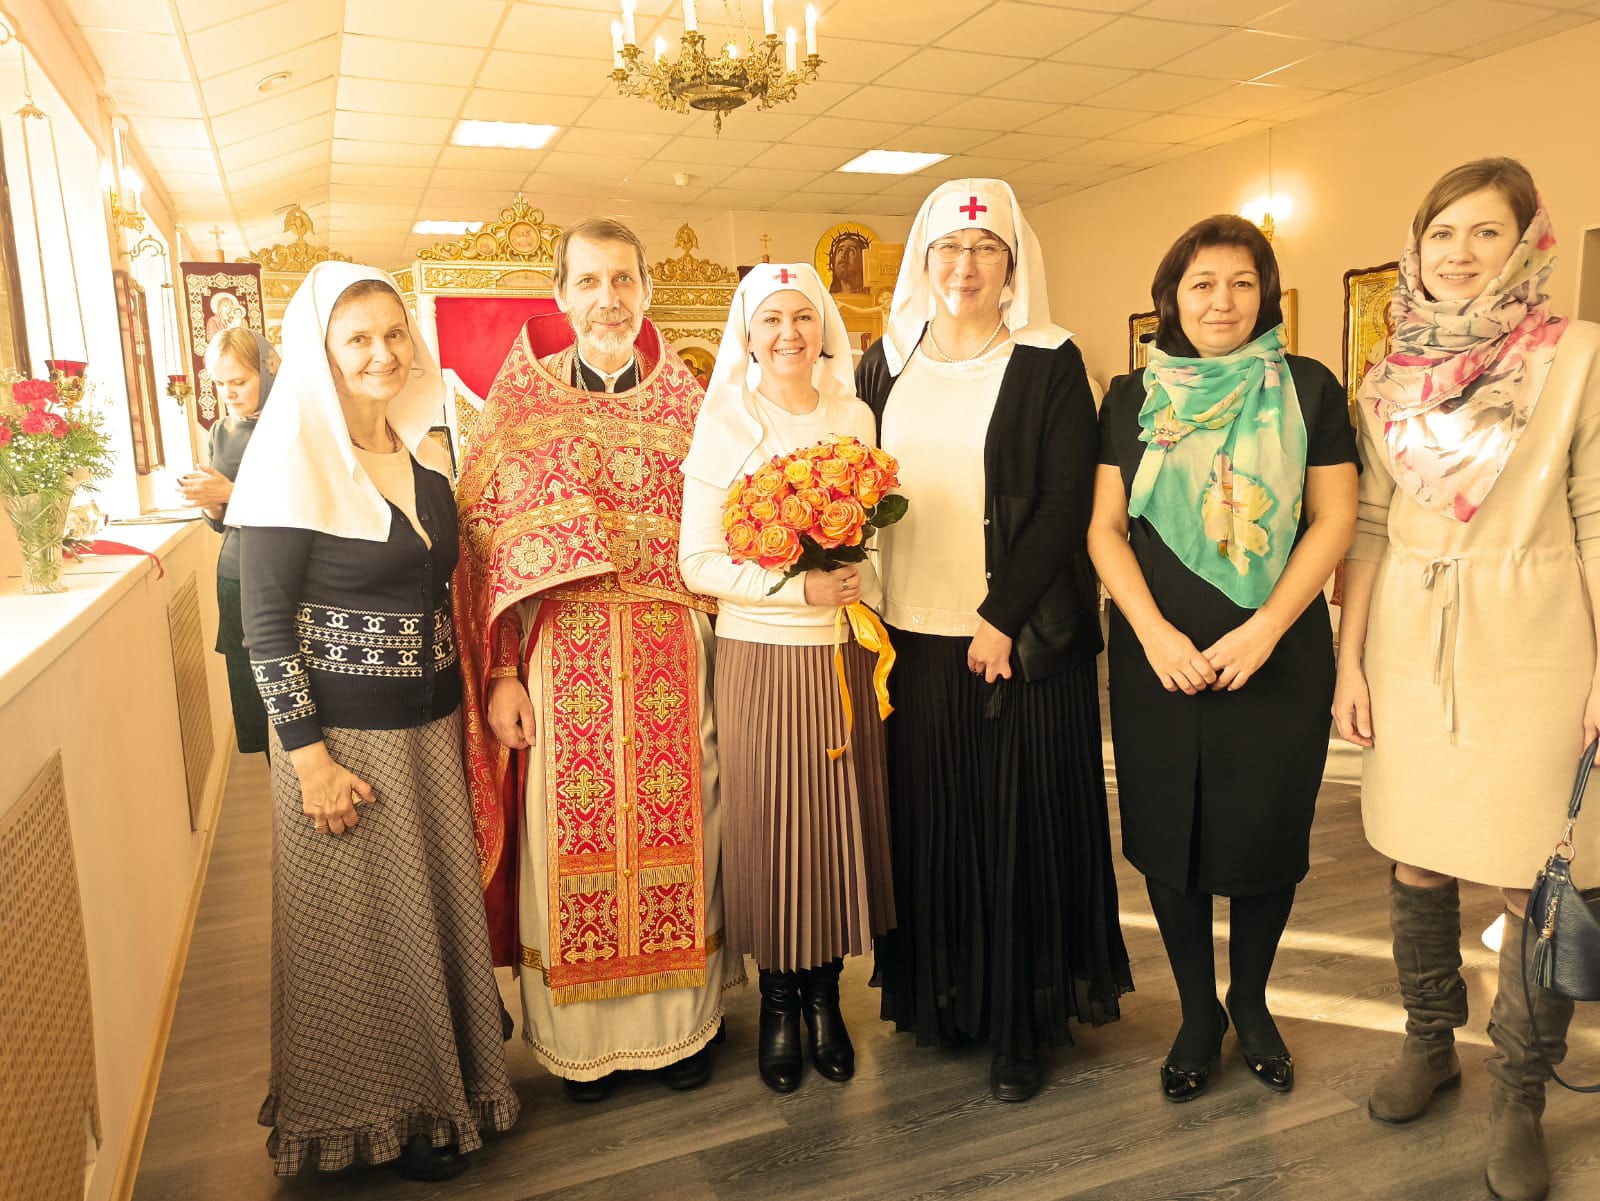 Состоялось торжественное открытие богадельни у наших друзей – Елизаветинской обители милосердия в Лахте